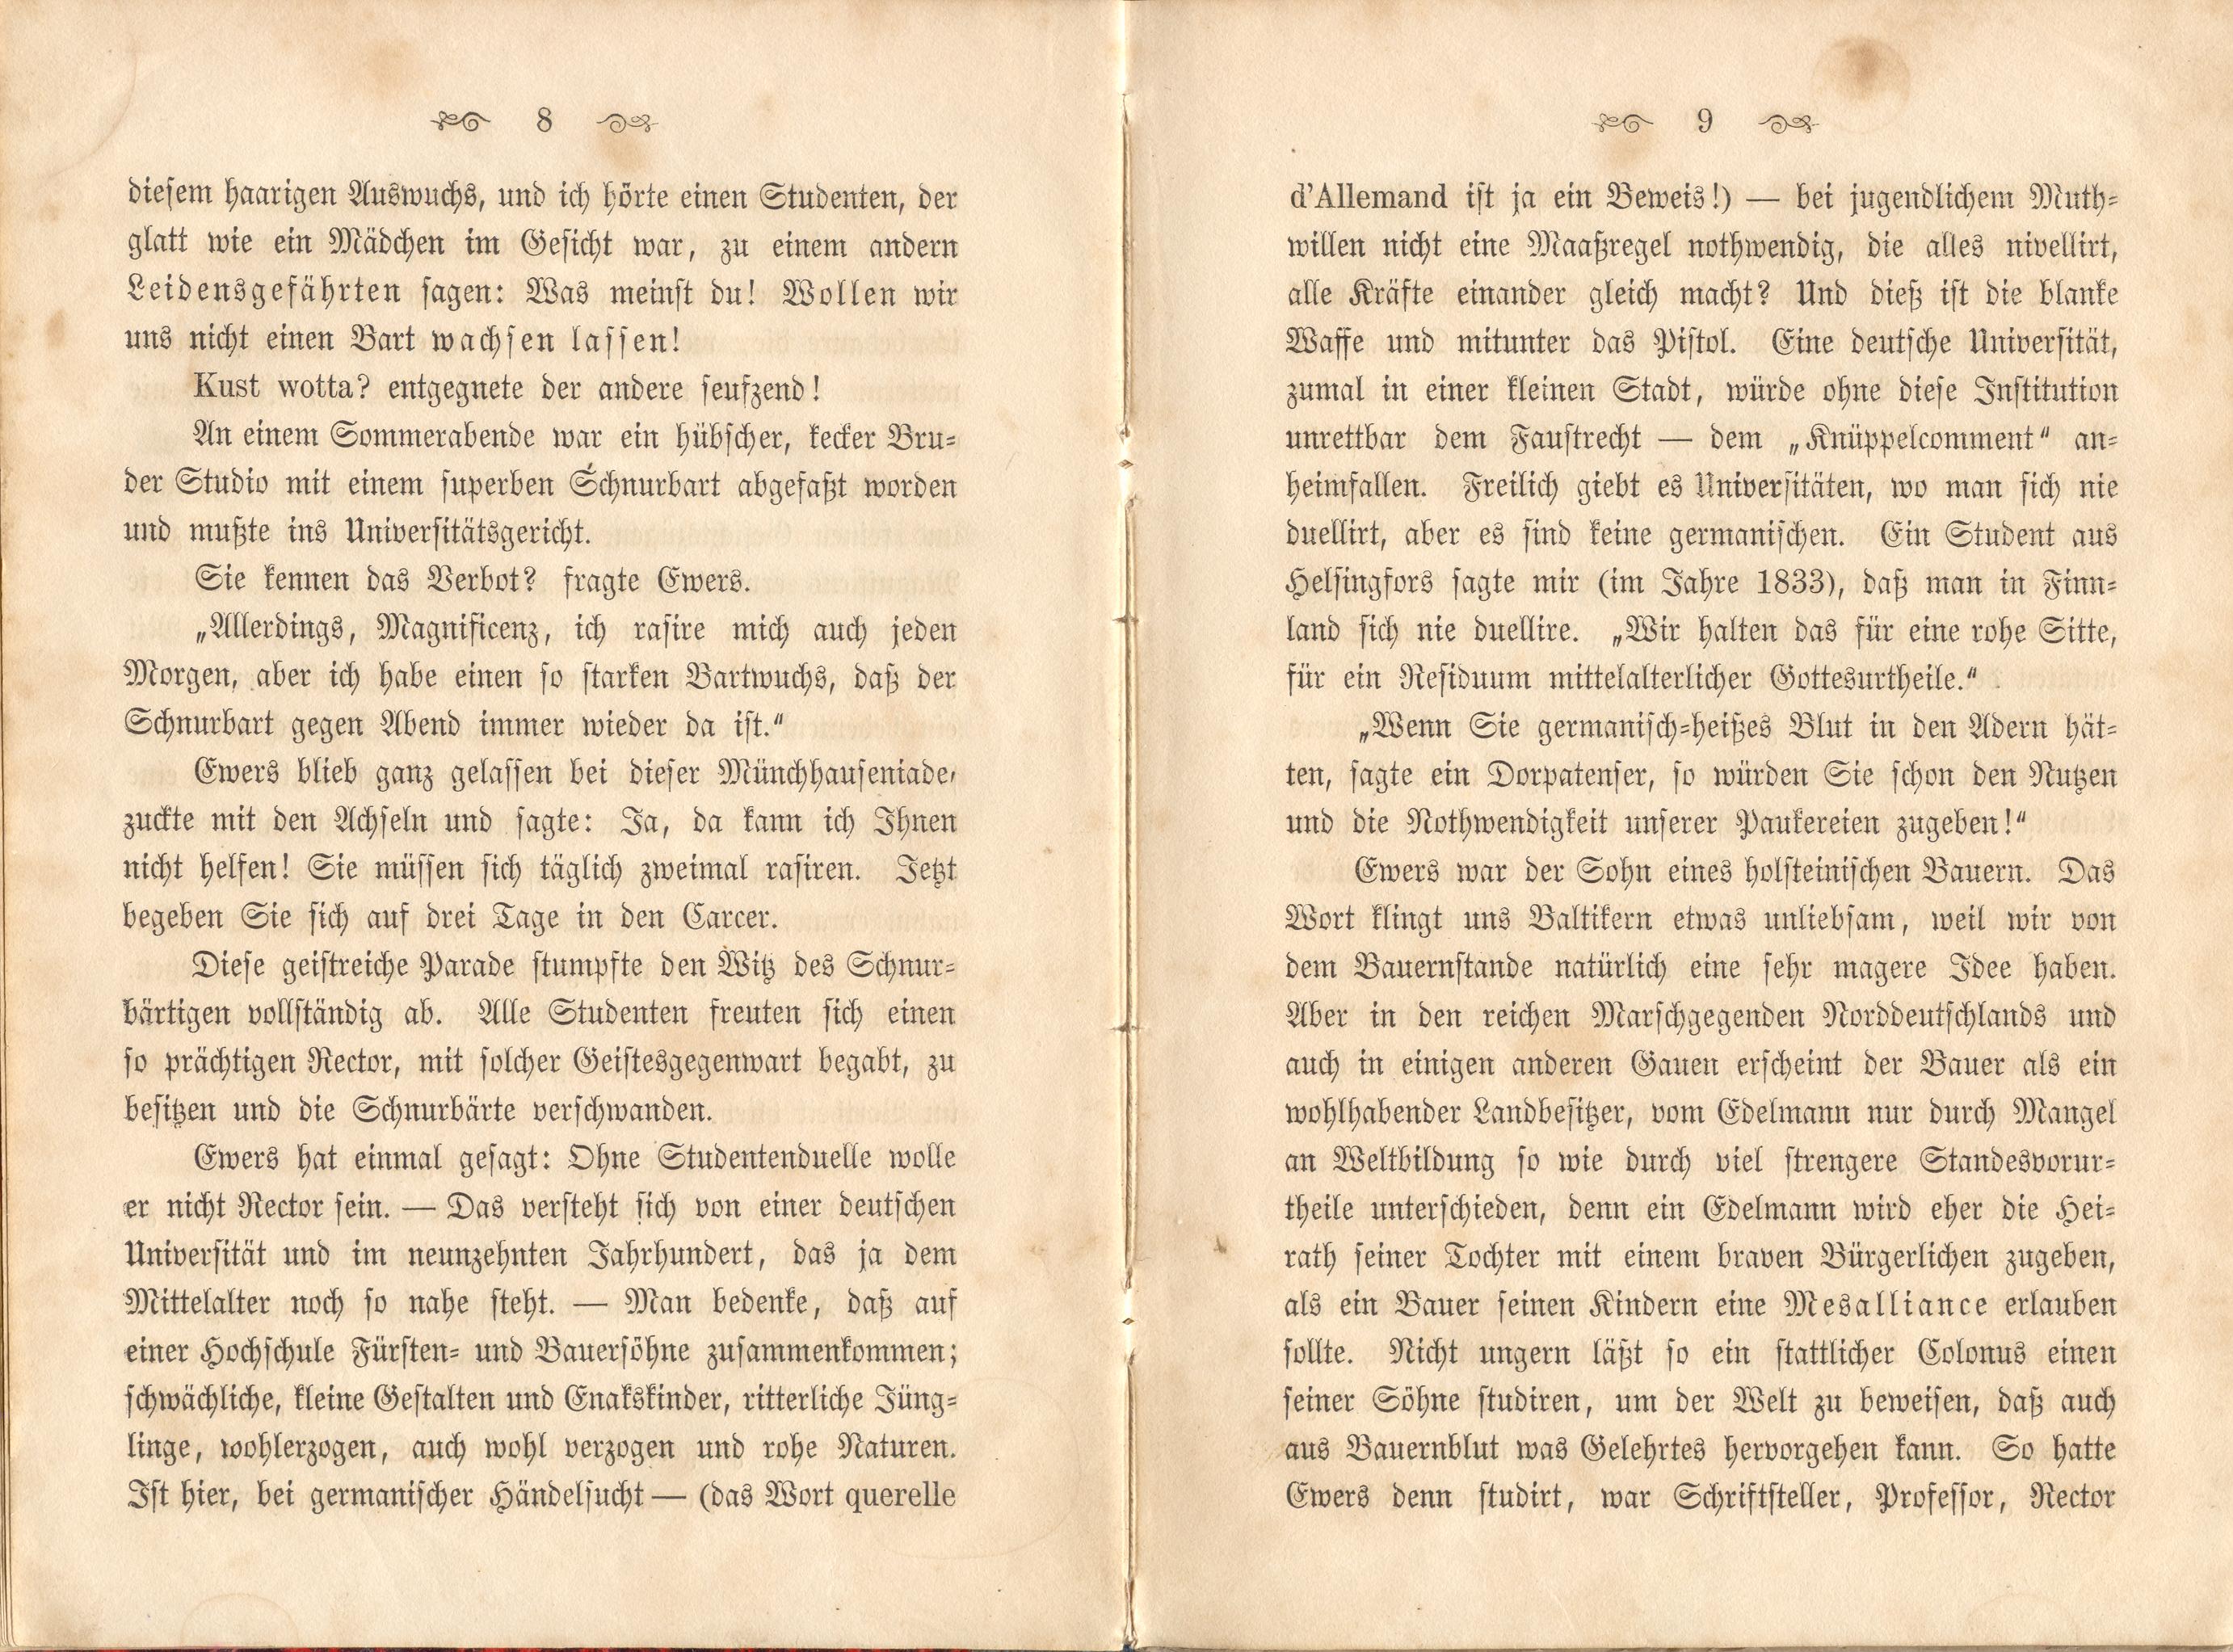 Dorpats Grössen und Typen (1868) | 7. (8-9) Основной текст